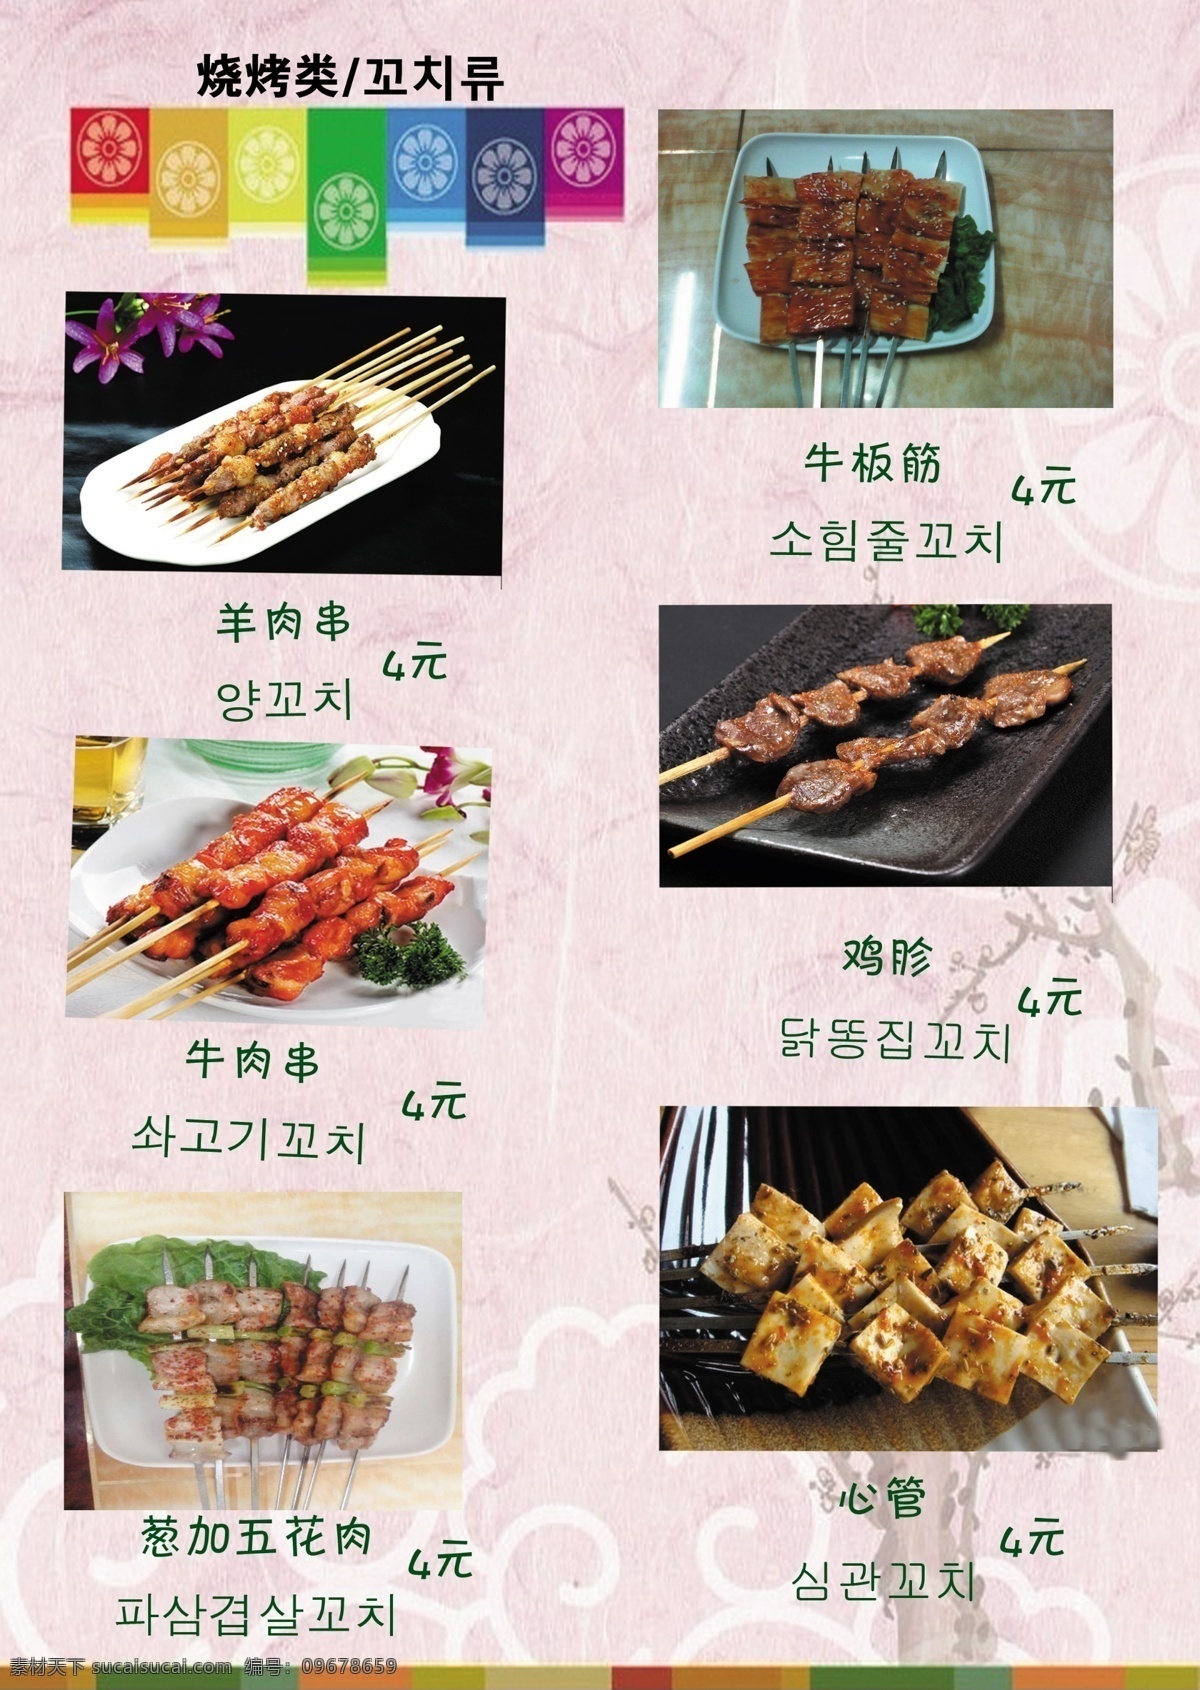 韩式 菜单 凉菜 热菜 烧烤 炒菜 酒水 饮料 室内广告设计